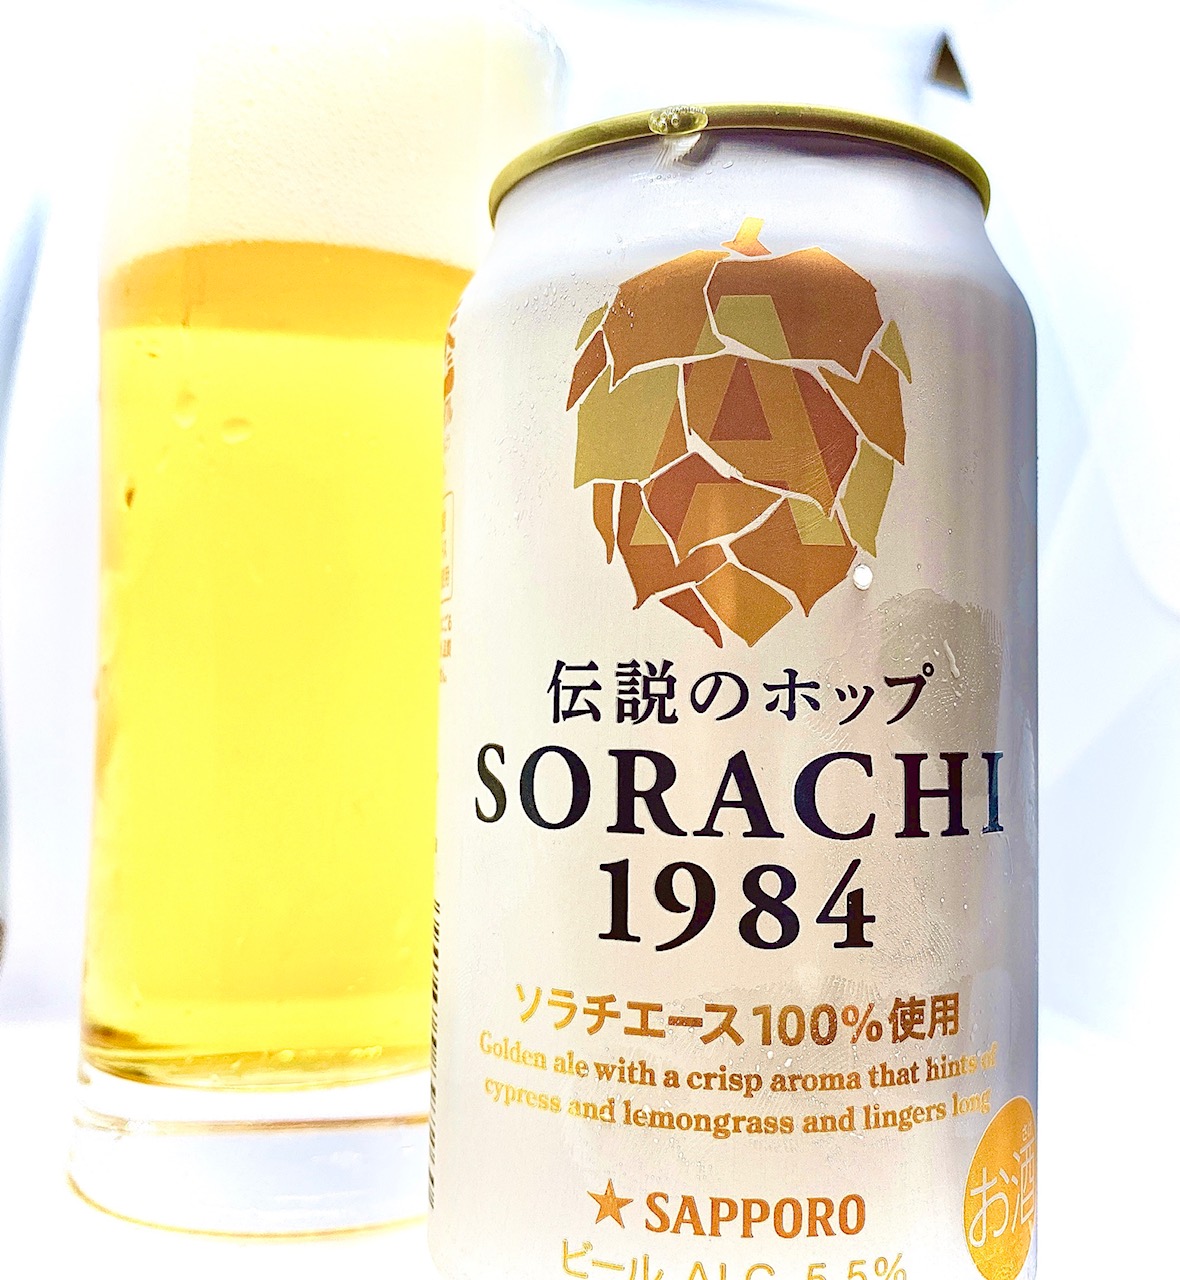 サッポロビール株式会社「サッポロ SORACHI1984」